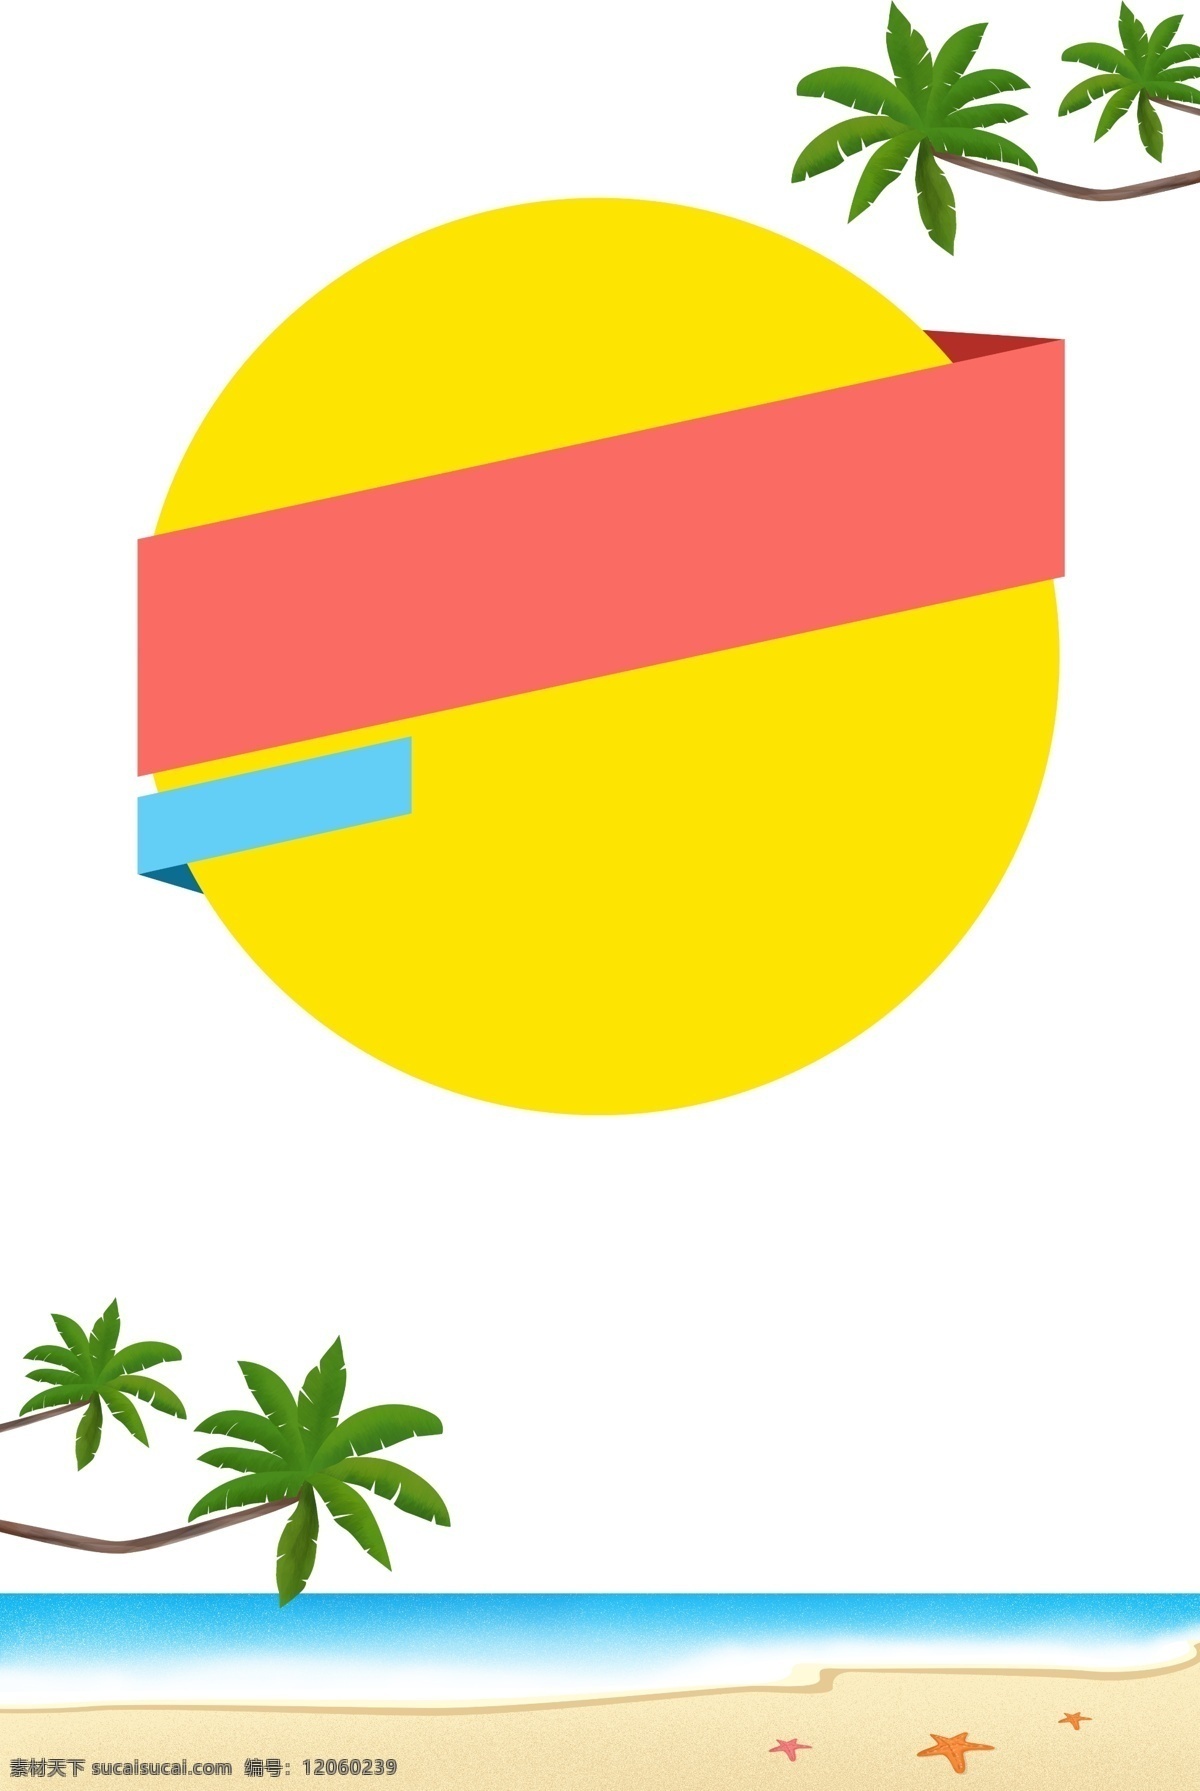 夏天 沙滩 大海 海报 边框 海浪 海滩 海星 椰子树 椰子叶 主题边框 清凉一夏 清凉 清新 海报边框